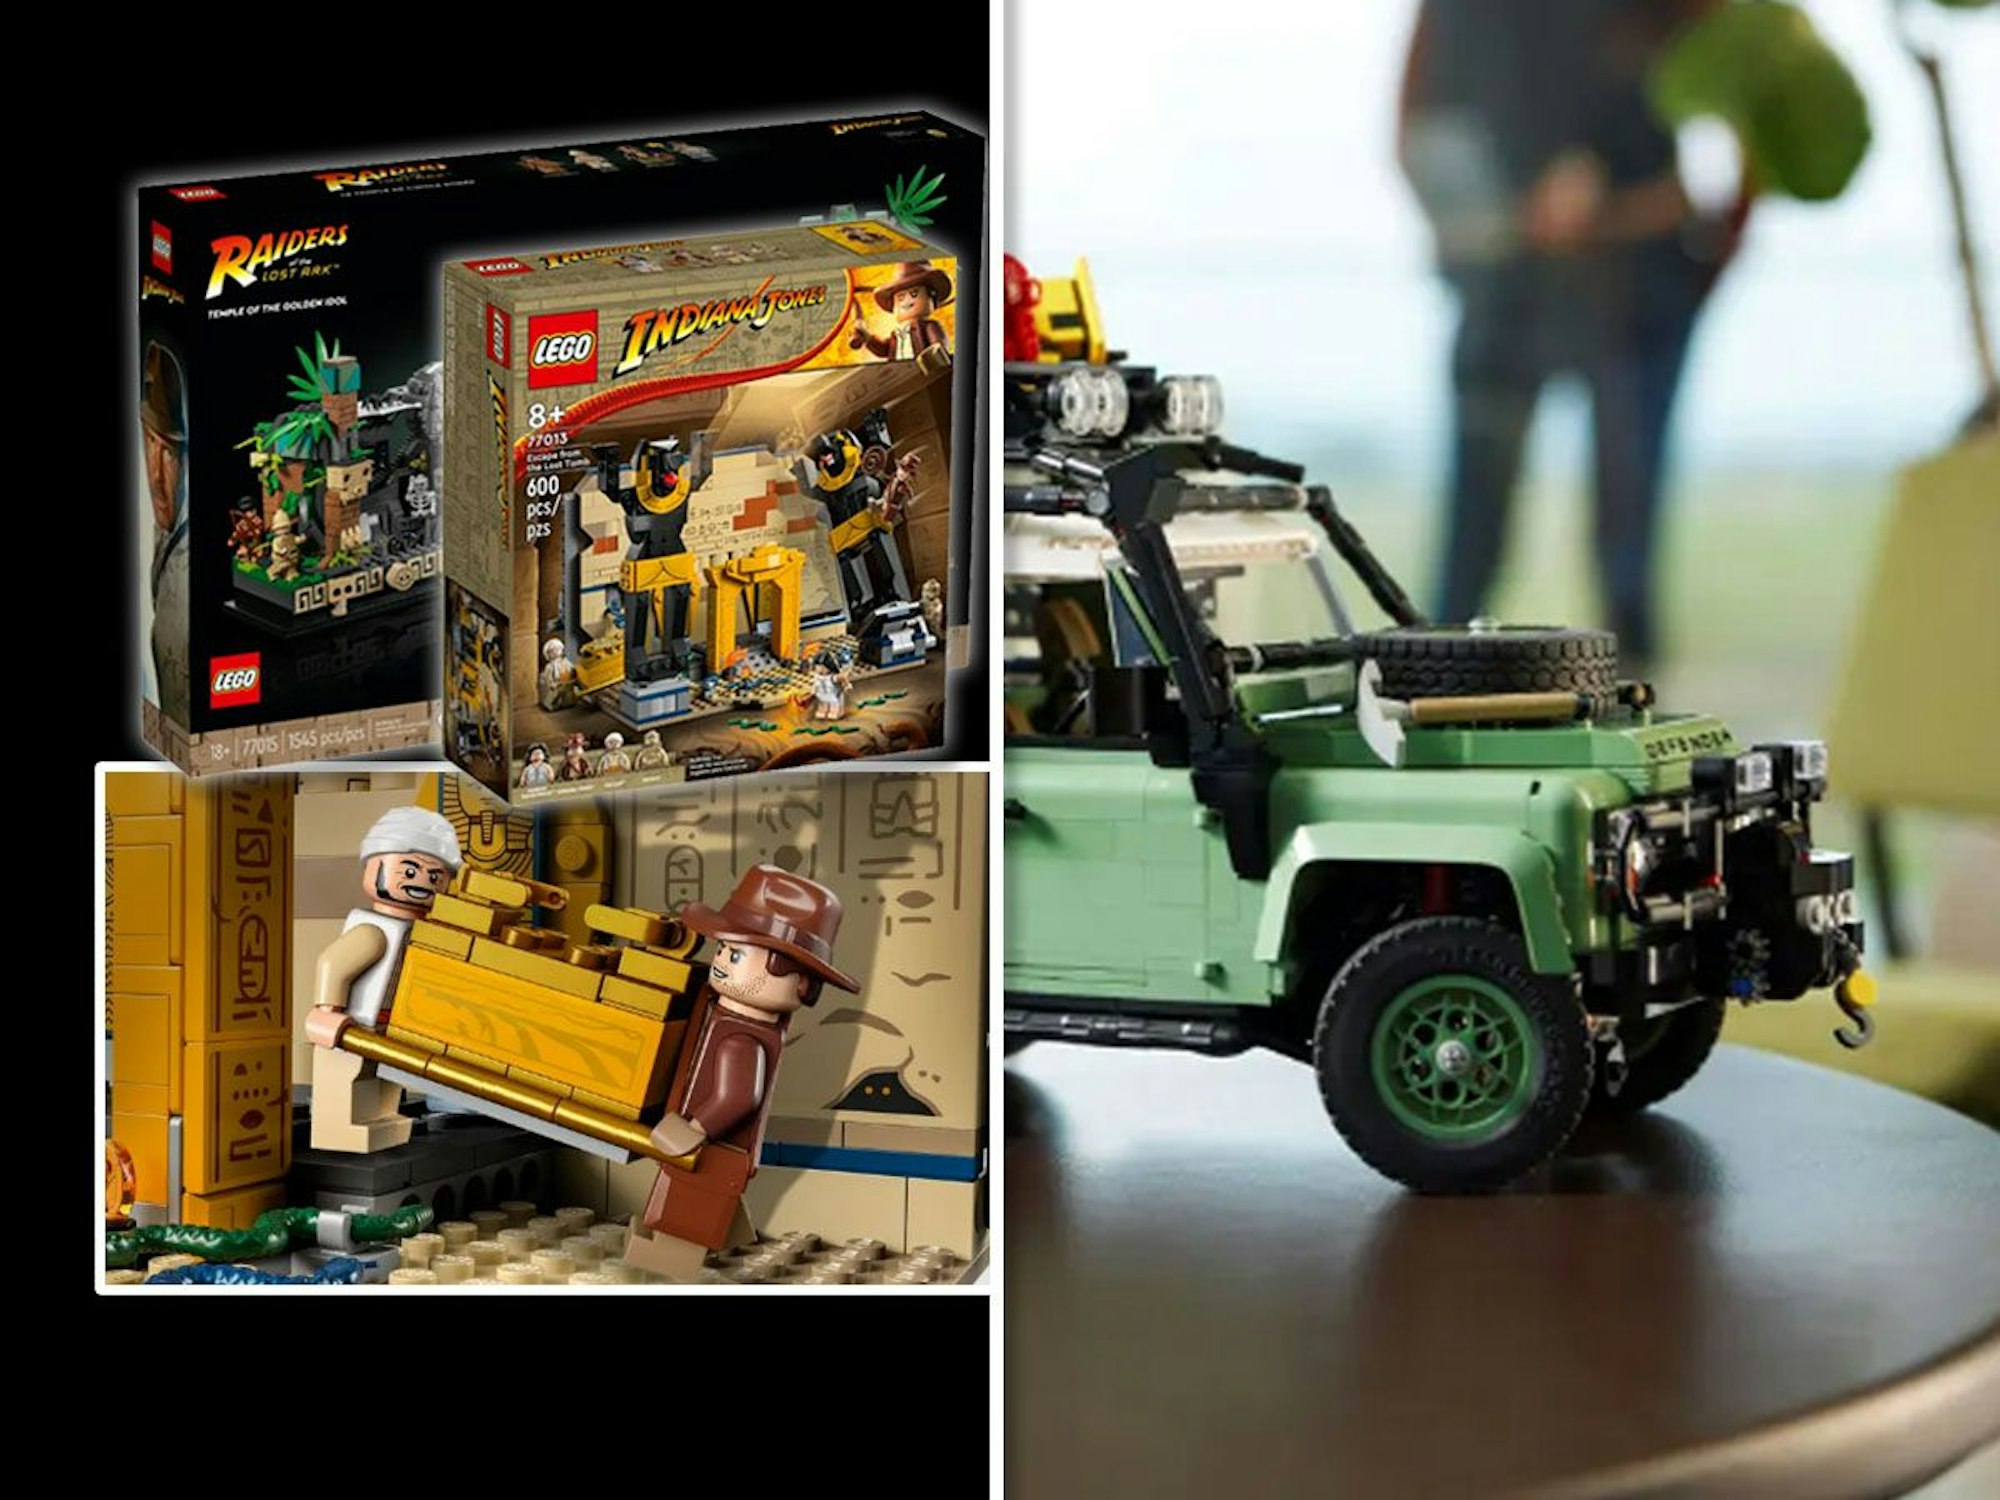 Lego Indiana Jones und Lego Land Rover Defender 90 Produktbilder für Lego Neuheiten Artikel.